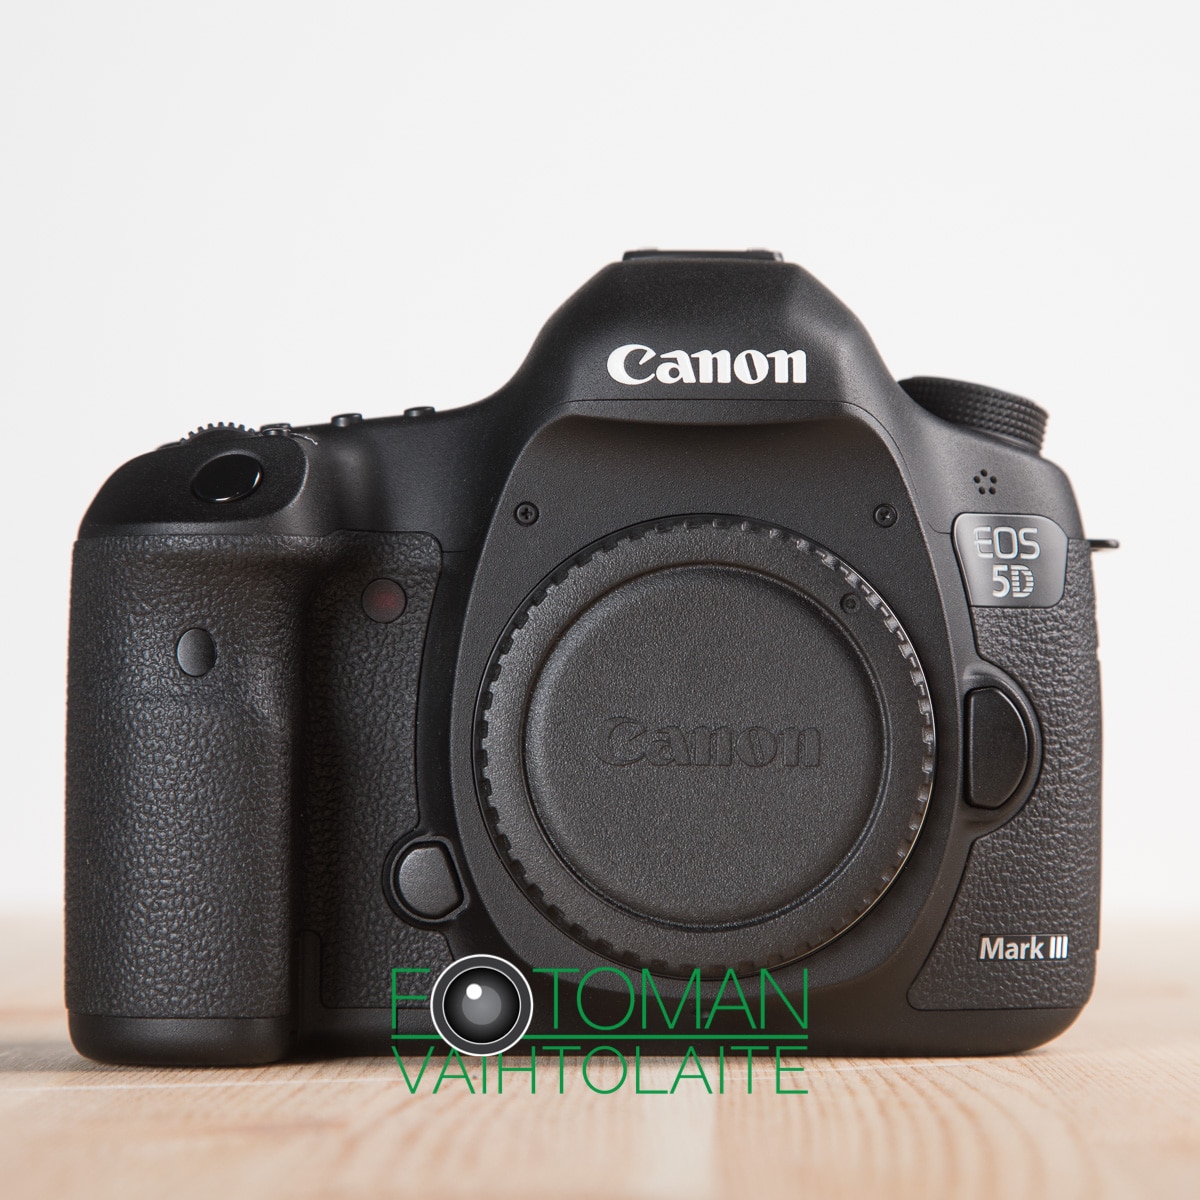 MYYTY Käytetty Canon Eos 5D Mark III kamerarunko